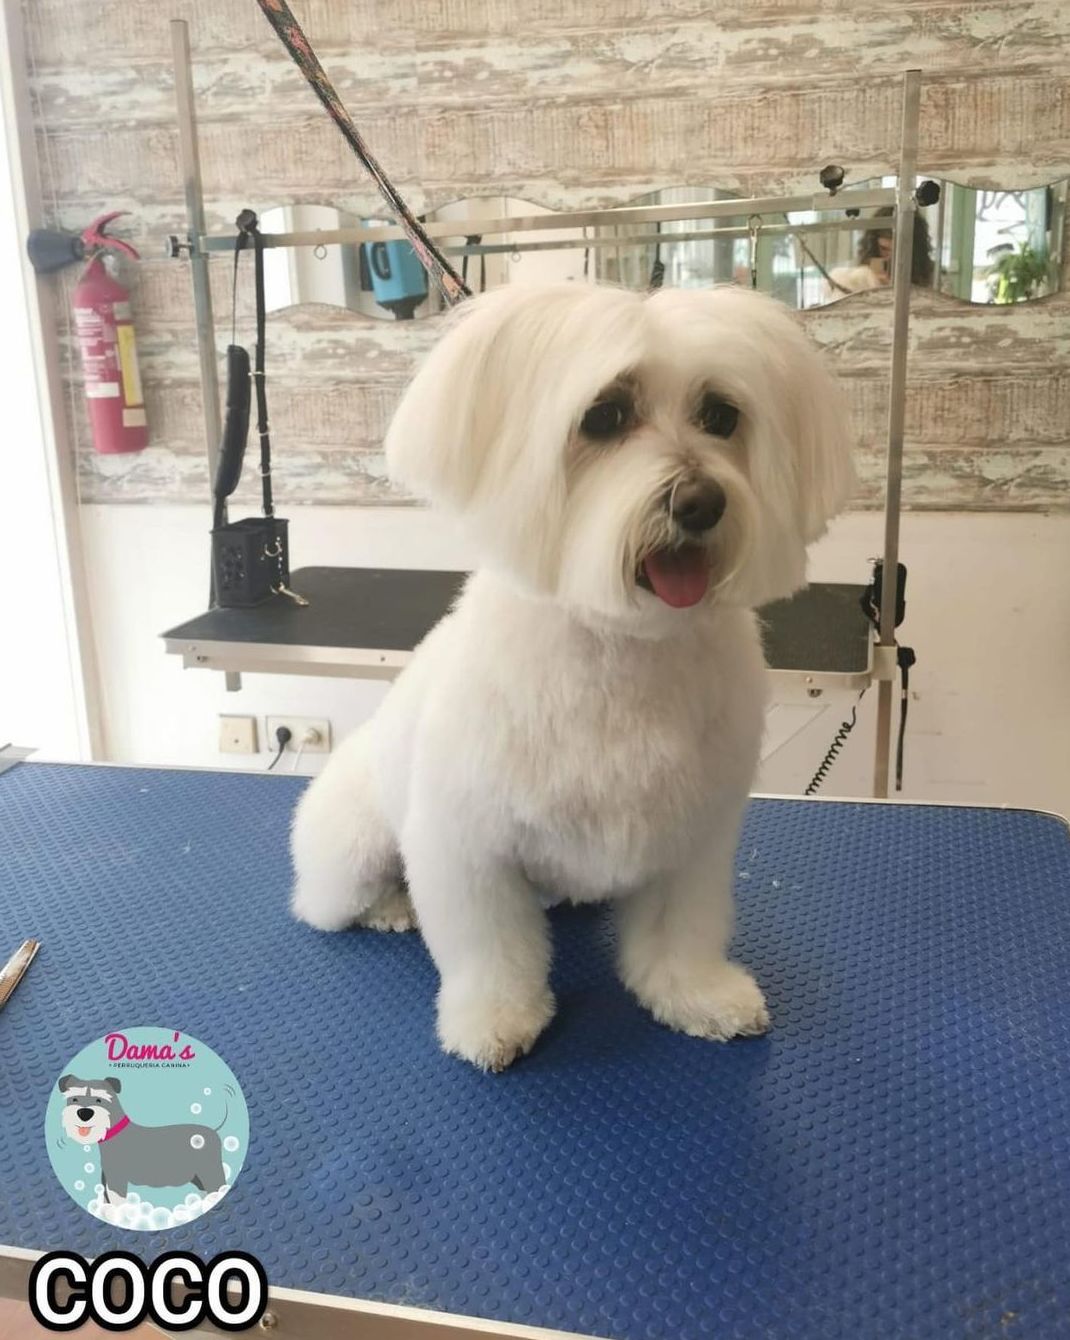 Foto 78 de Peluquería canina con todo tipo de tratamientos para tu mascota en  | Dama's